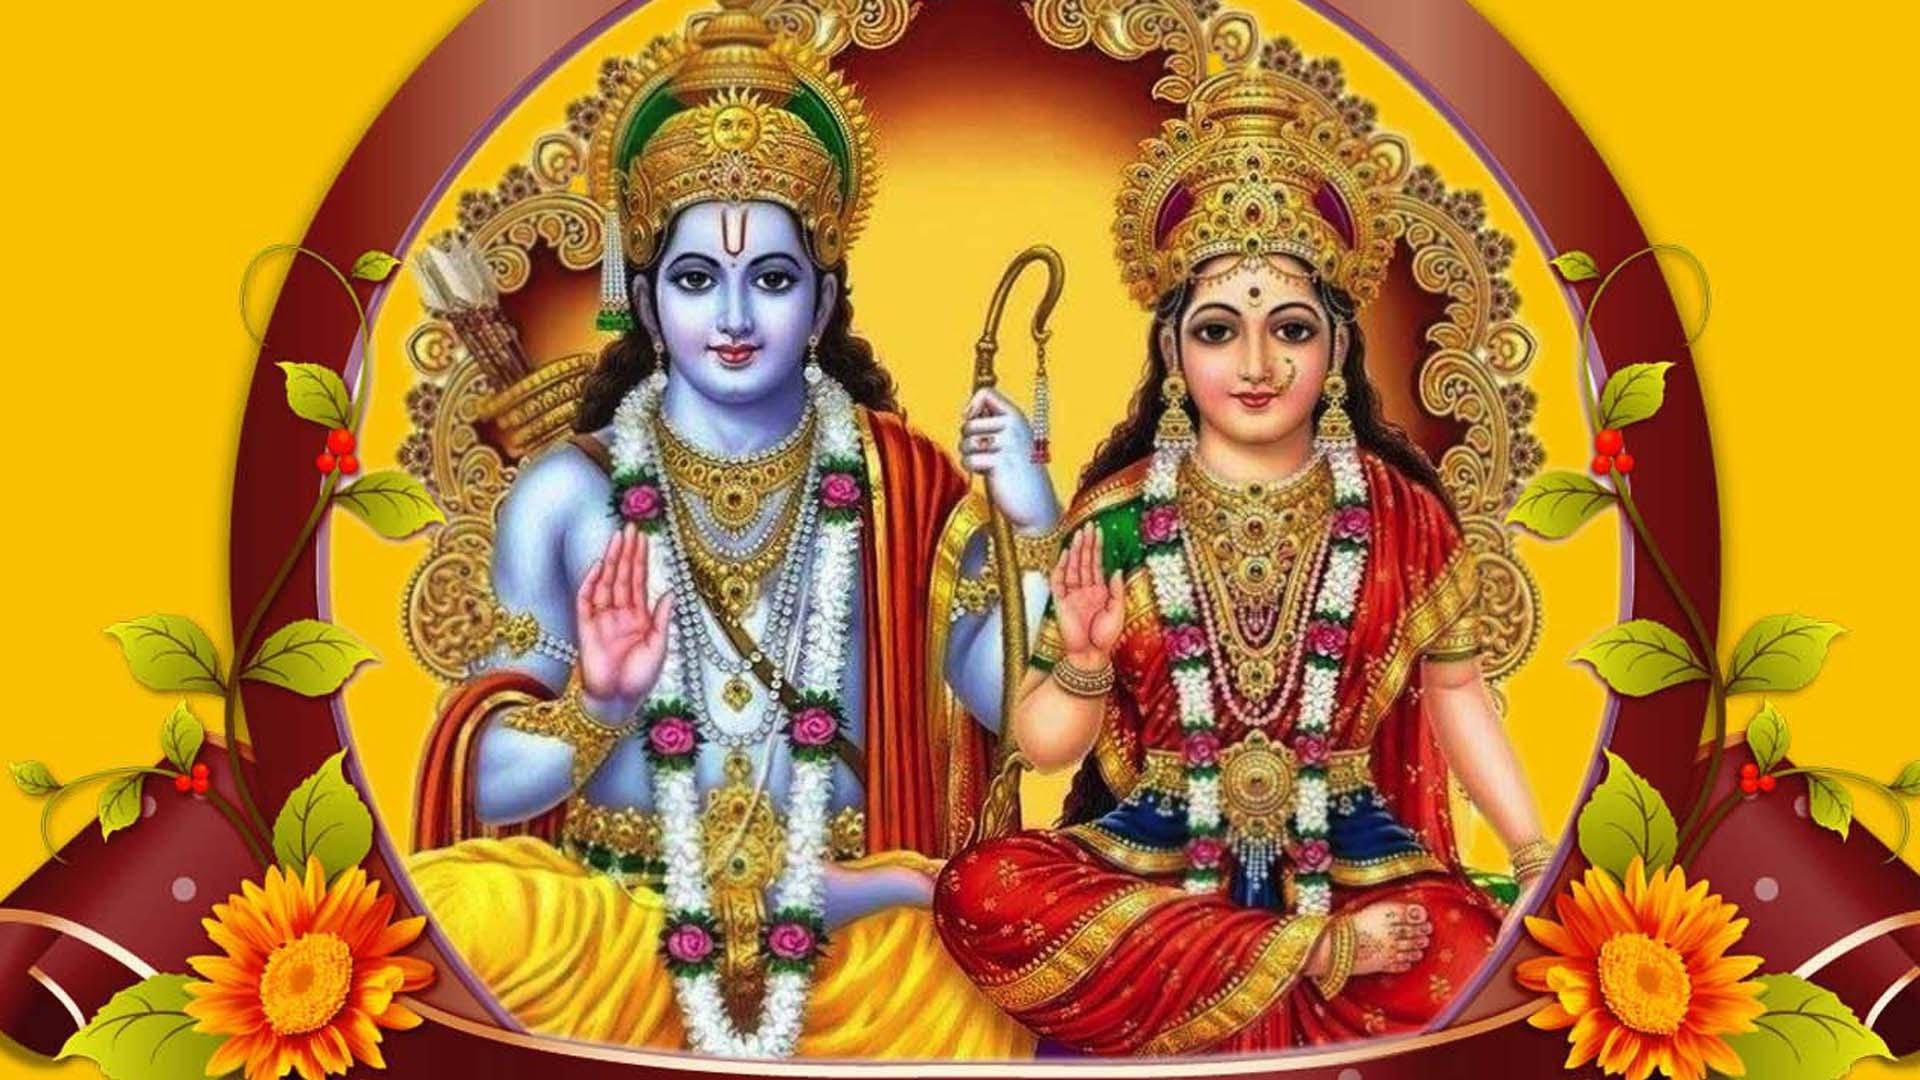 Jai Shri Ram Rama And Sita With Flowers Wallpaper